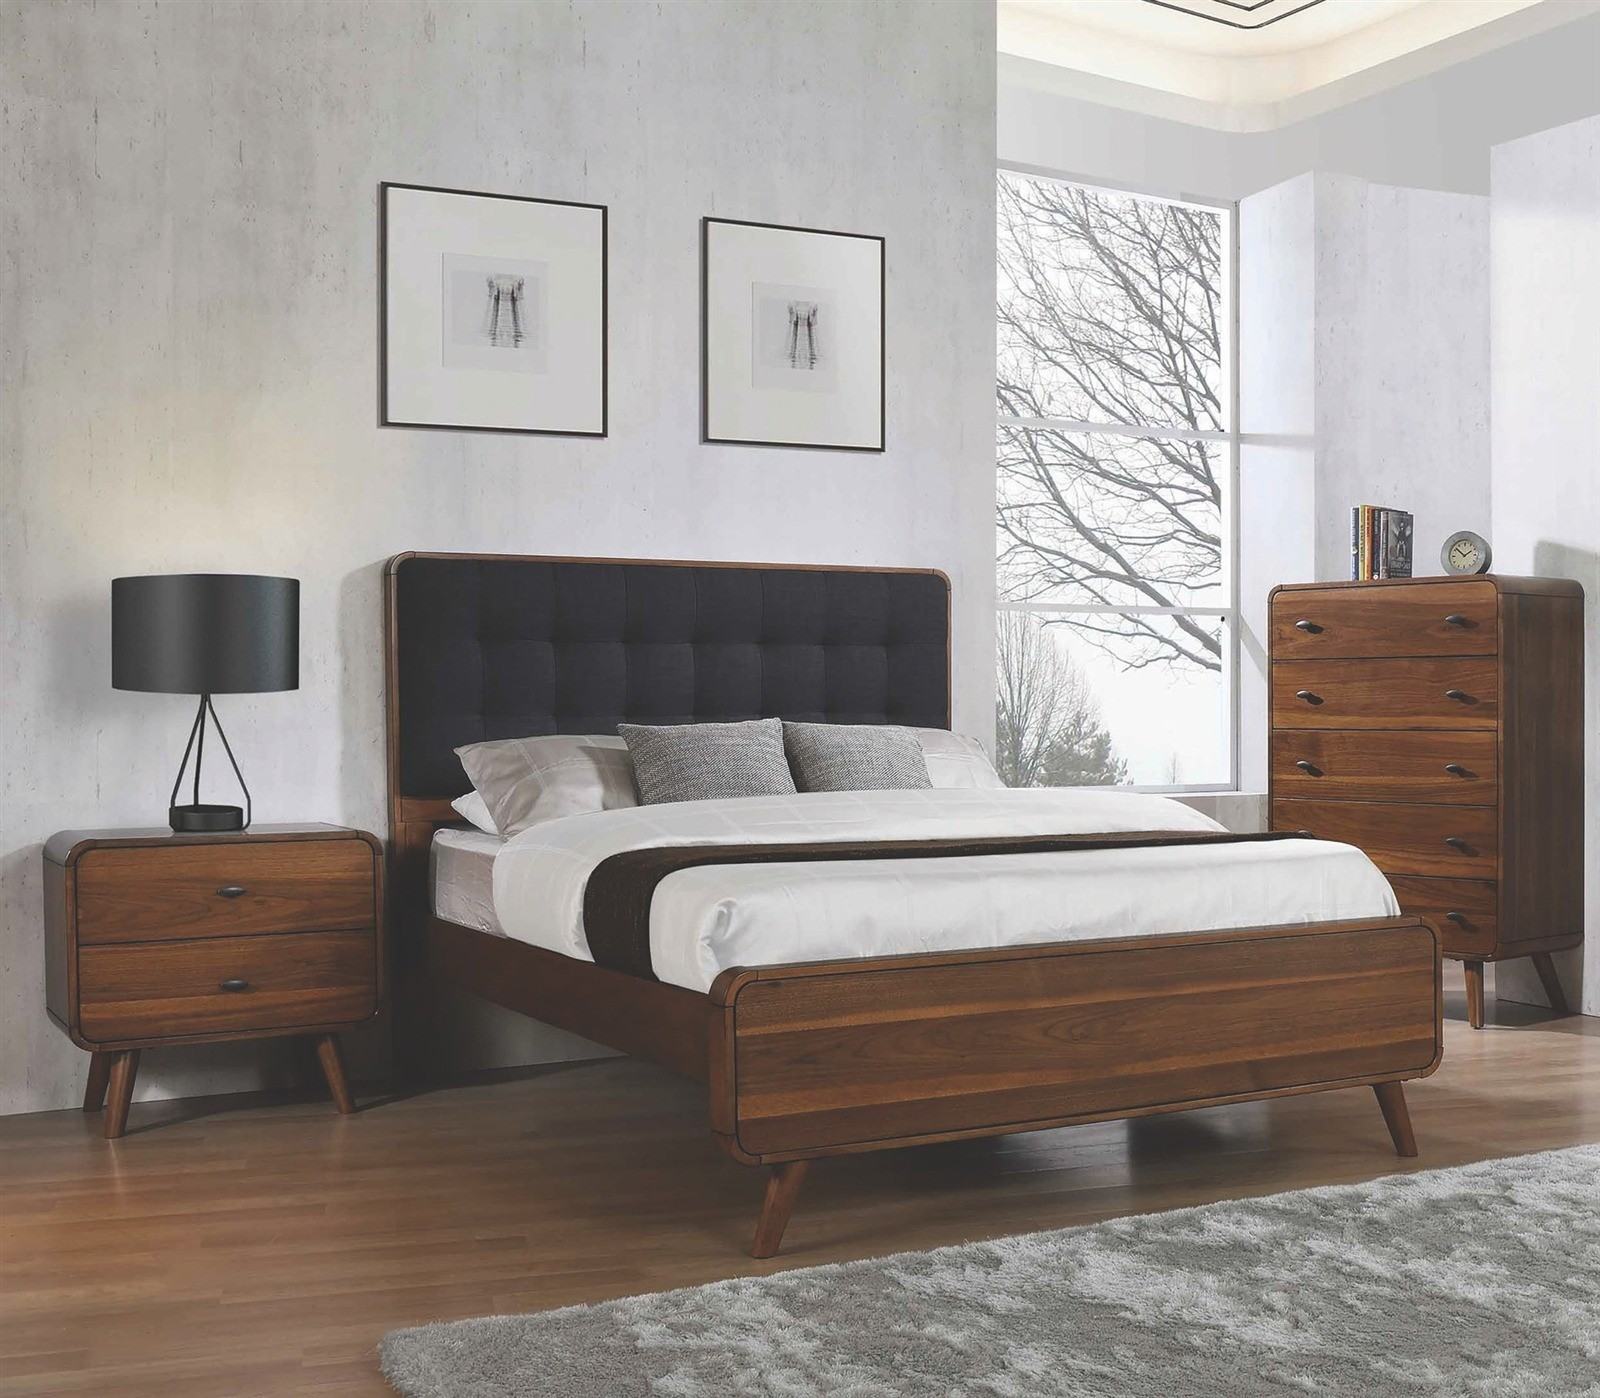 Giường gỗ sang trọng cho phòng ngủ hiện đại